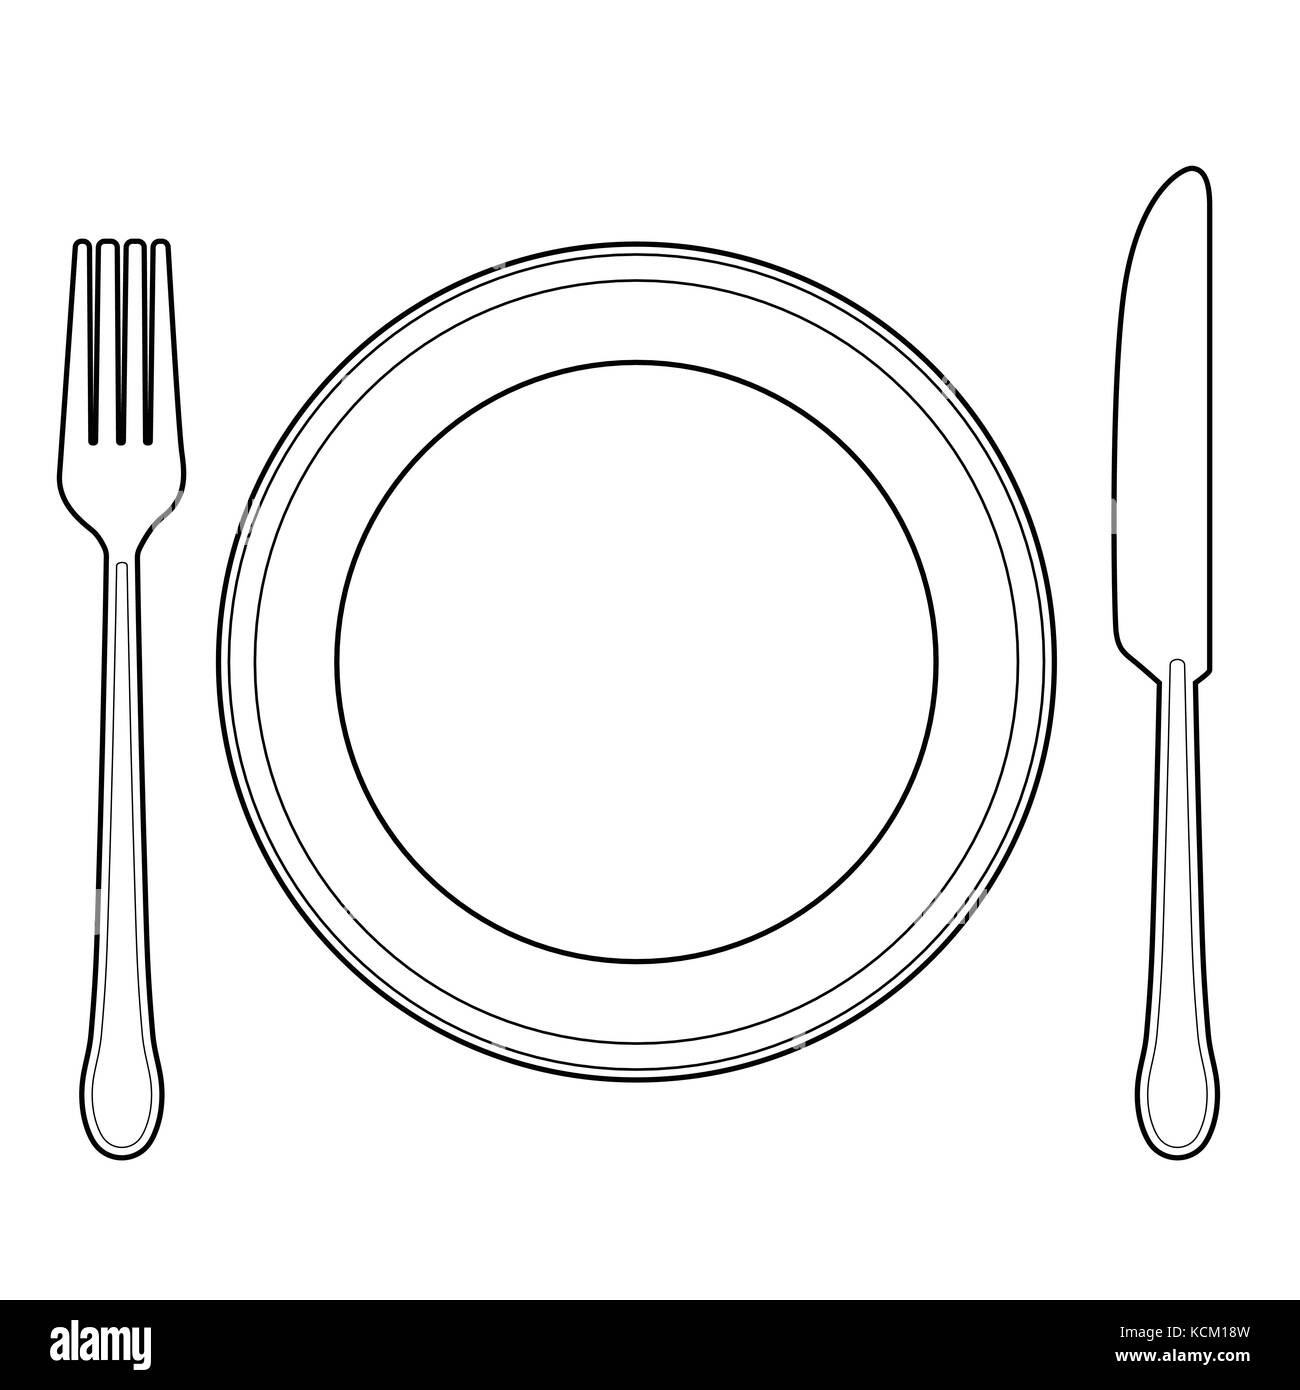 fork knife logo